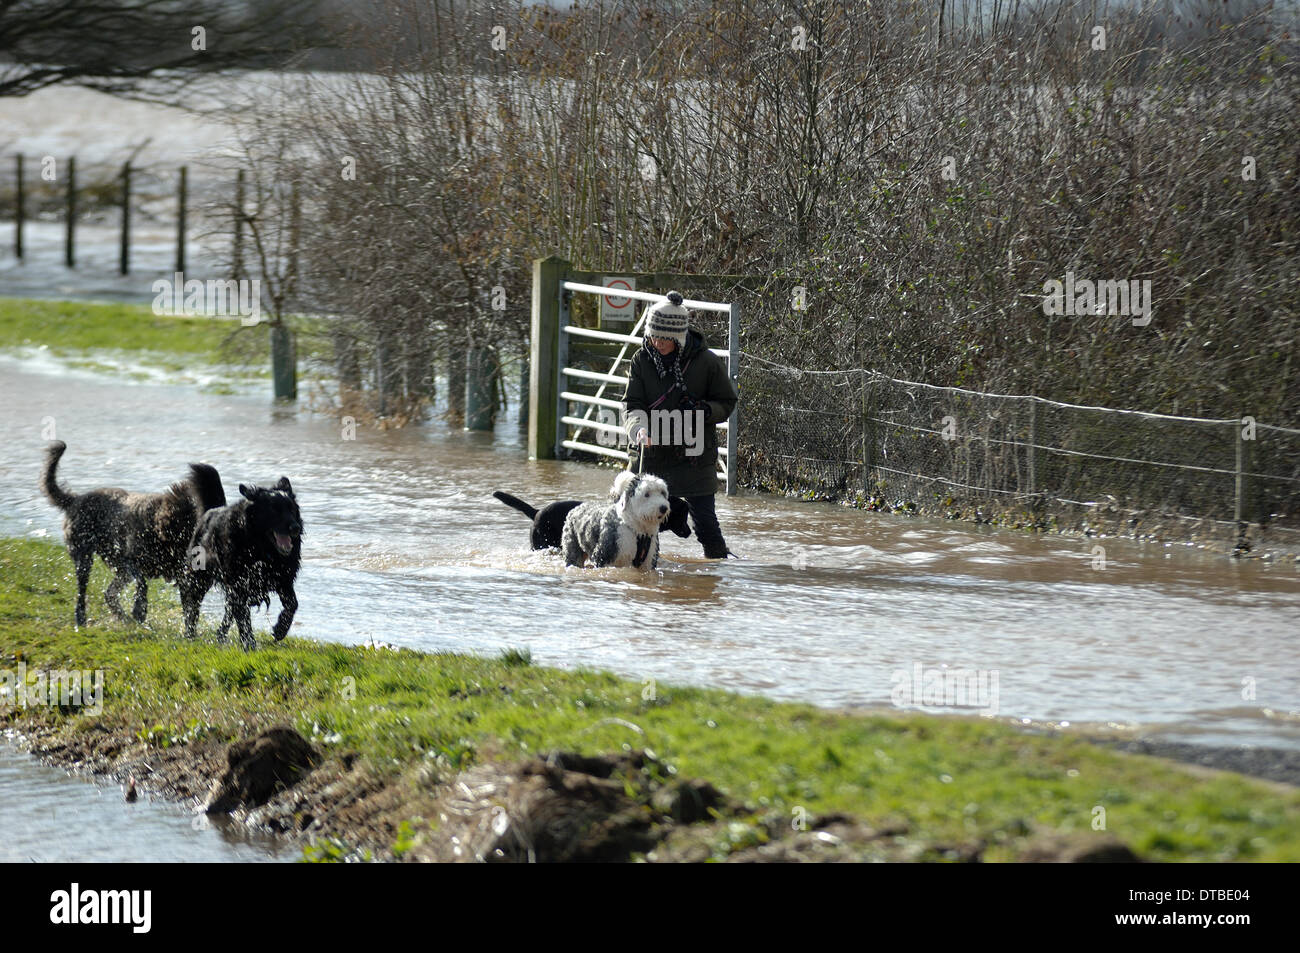 Burrowbridge, UK. Feb 13, 2014. Dog walker dans les inondations près de Burrowbridge sur Somerset Levels Paul Glendell Crédit/Alamy Live News Banque D'Images